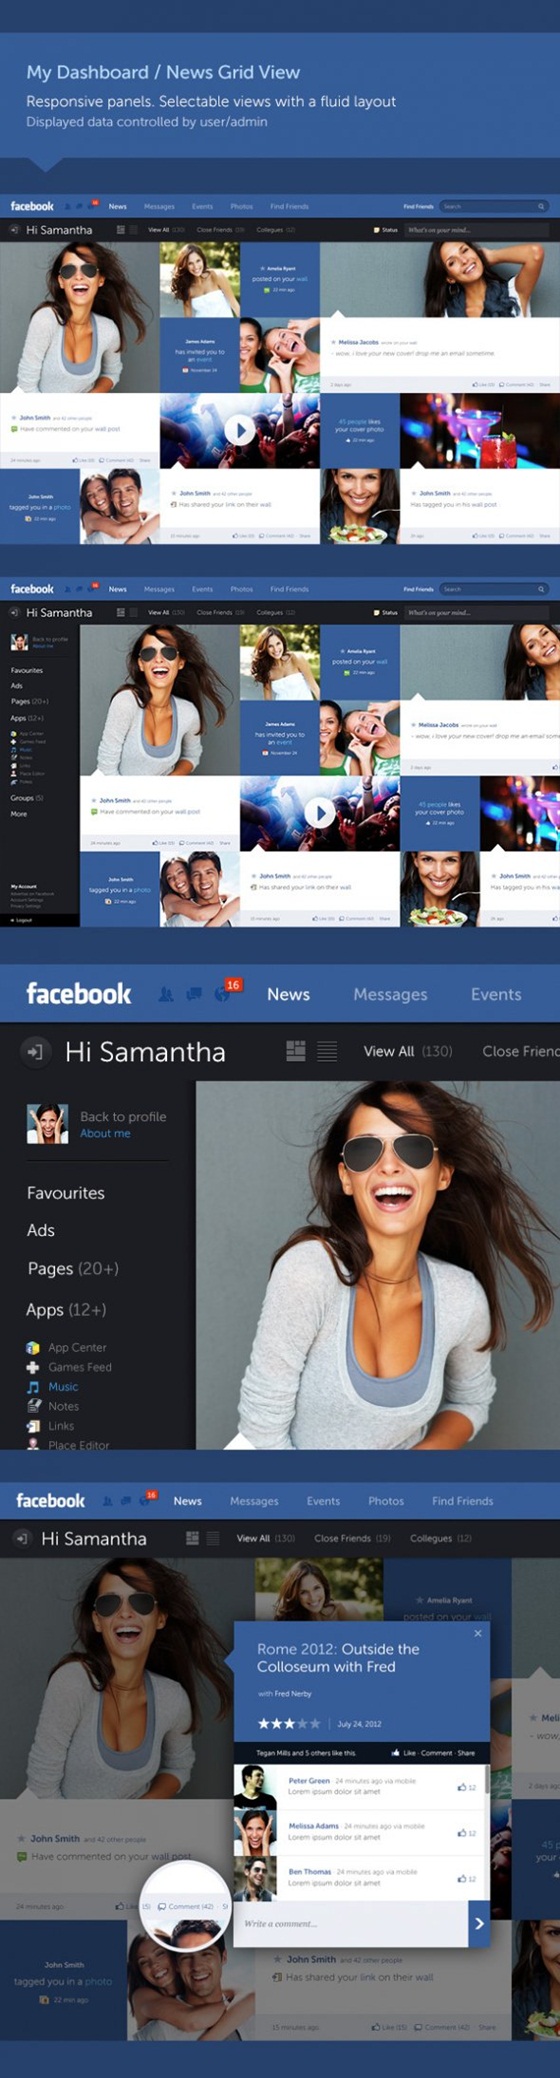 Giao diện Facebook "tái thiết kế" đẹp mắt 3